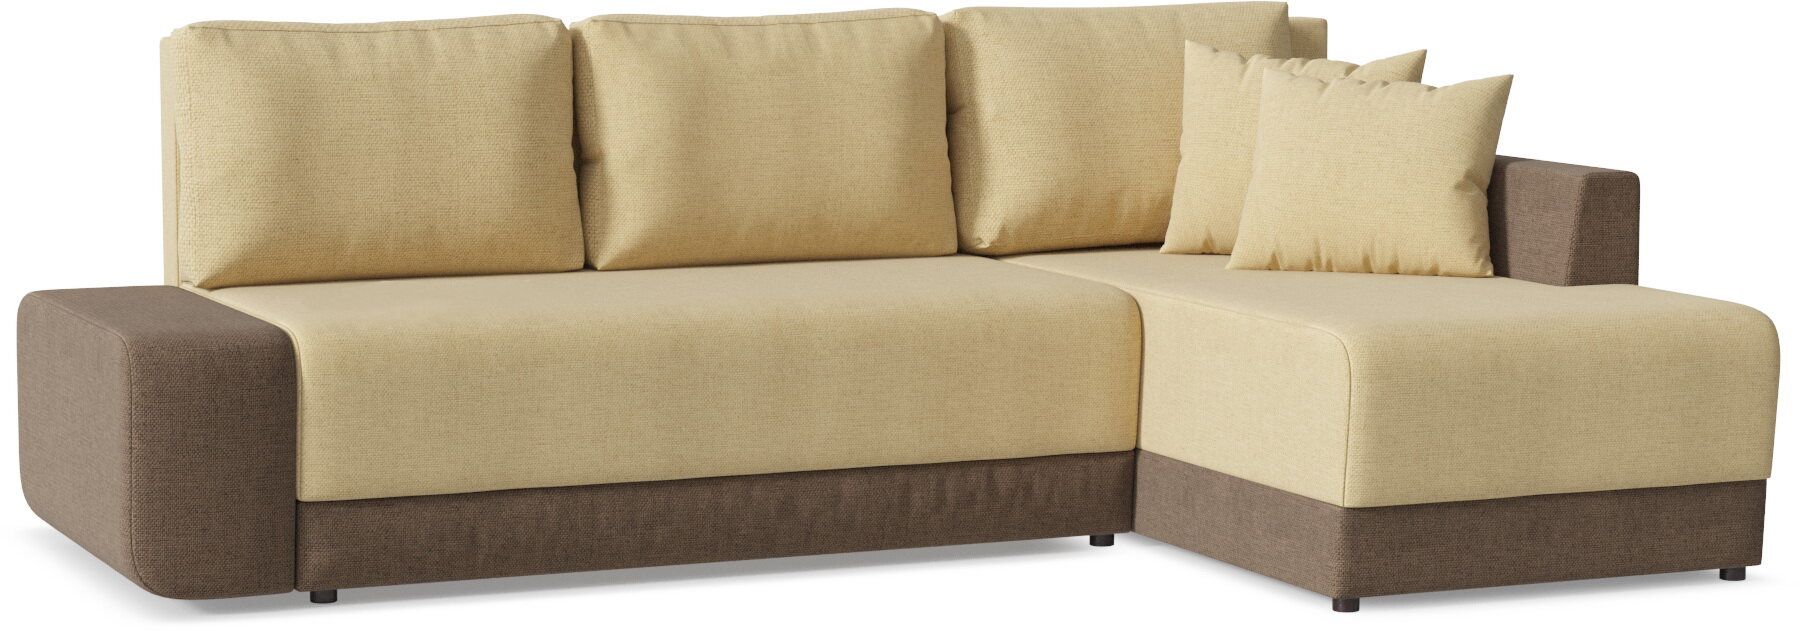 Угловой диван "Модель 072"(Олимп-1)